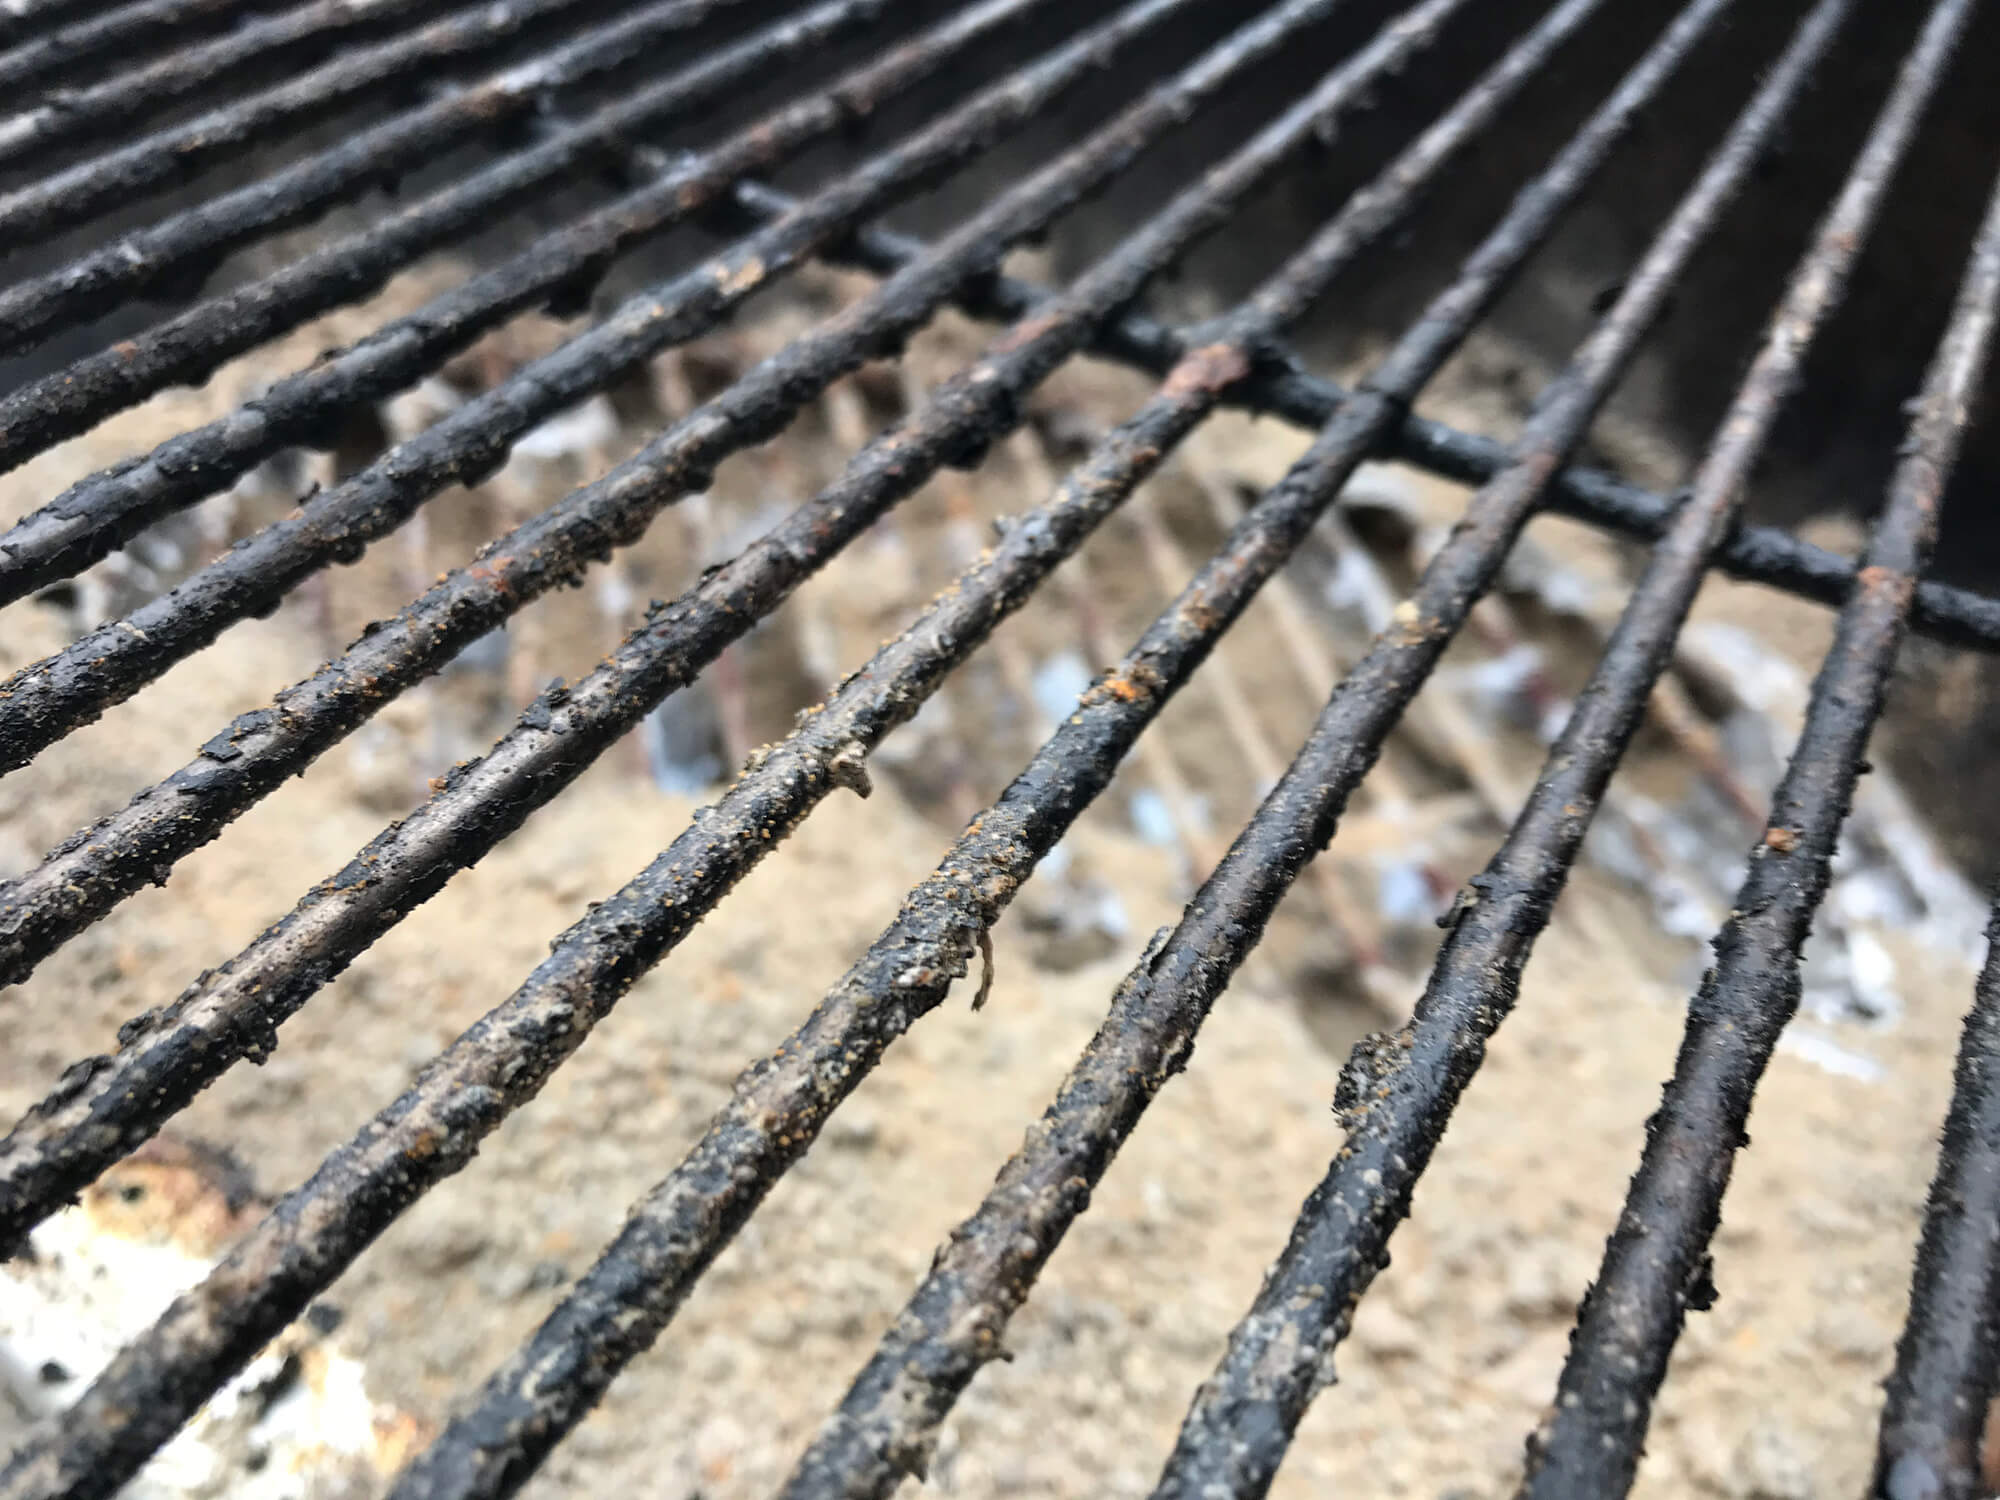 Beskidt grillrest